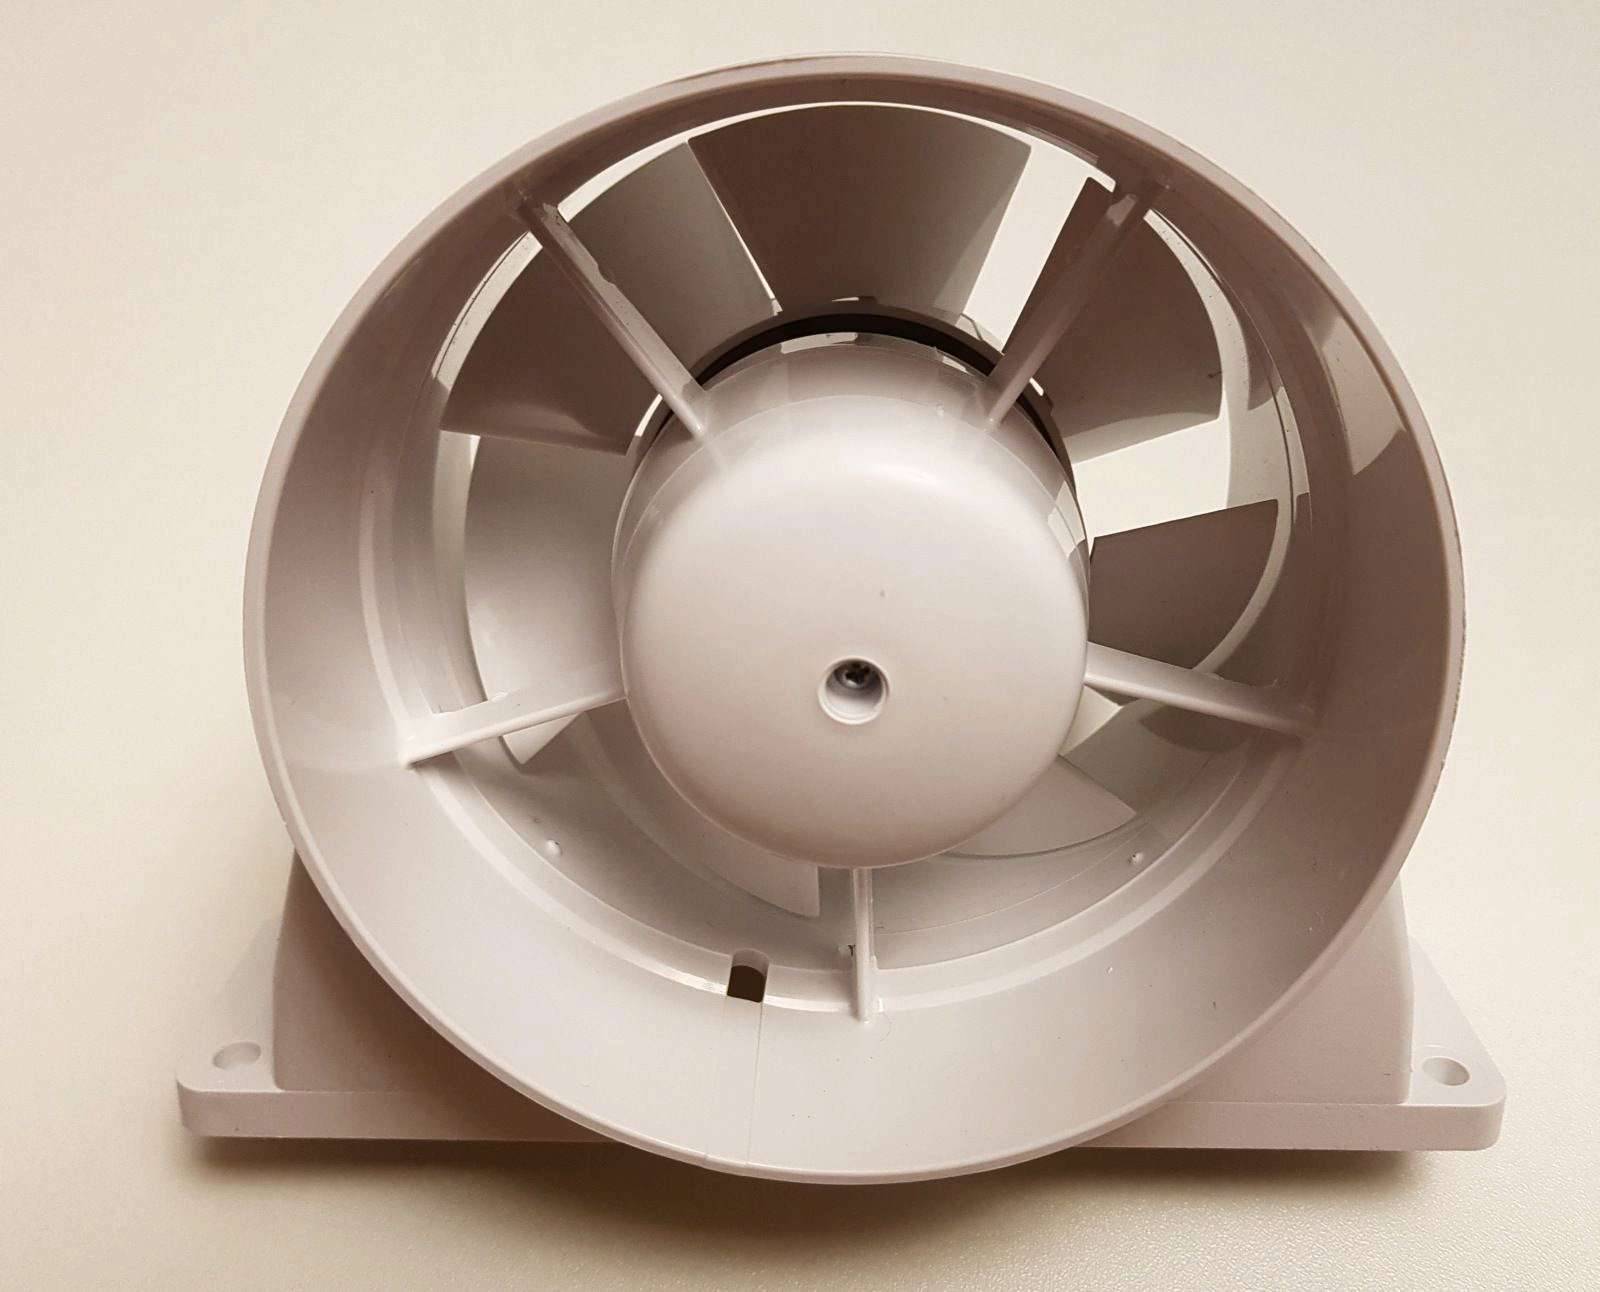 Монтаж канального вентилятора: как правильно установить, провести подключение, соединить с воздуховодом